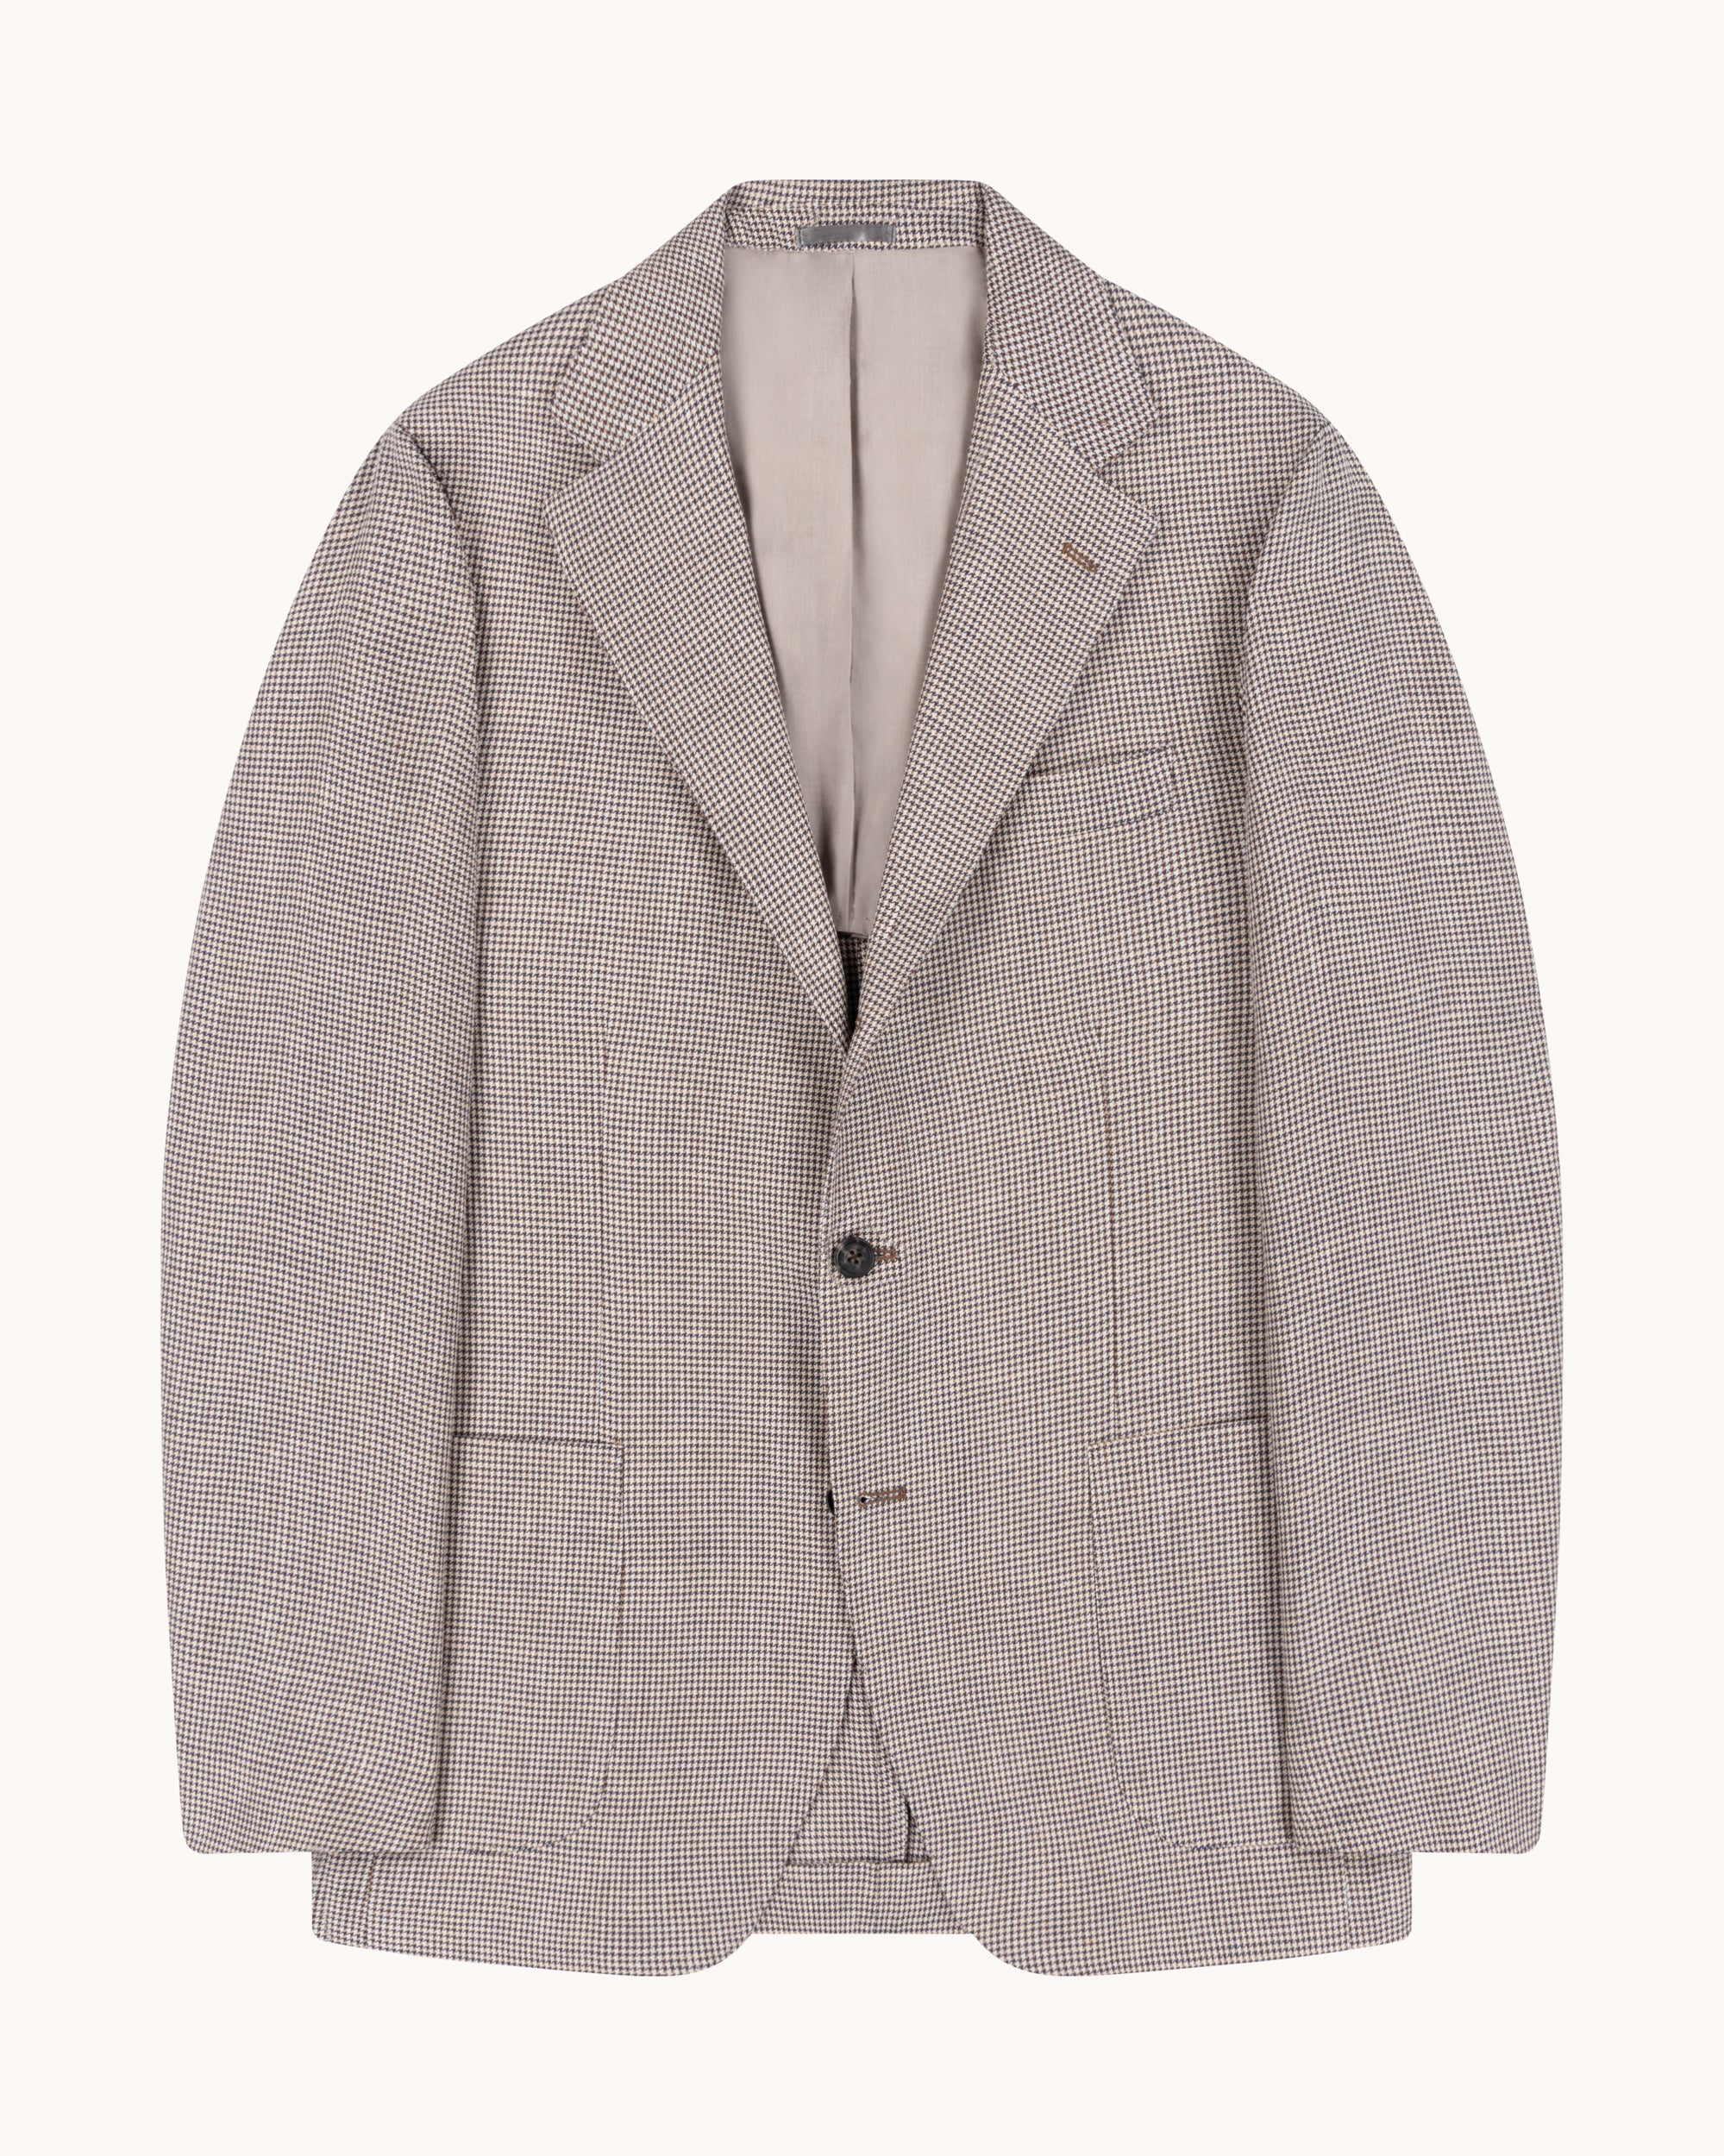 Sport Jacket - Beige Brown Houndstooth Wool Linen